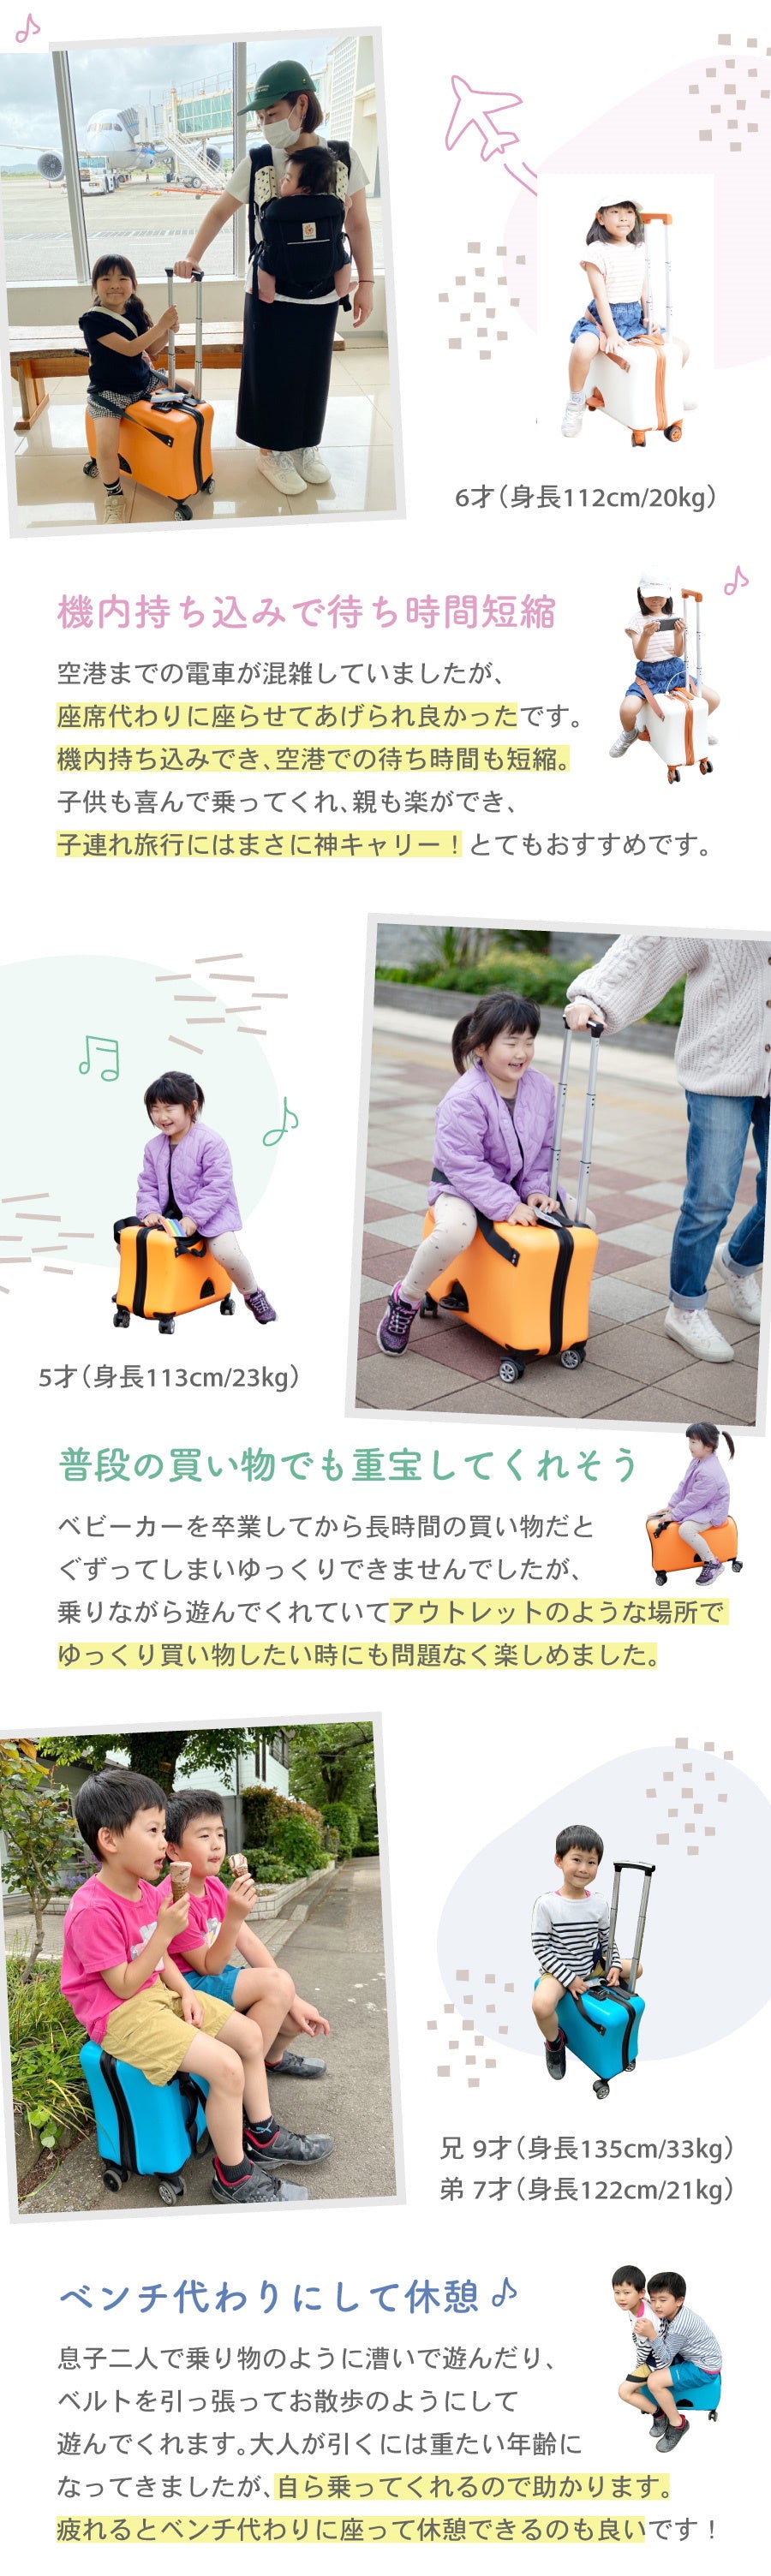 【8月下旬出荷予定】Nippers 子供が乗れるスーツケース 機内持ち込みサイズ HAPIRIDE MINI (ハピライドミニ) 20インチ 32リットル